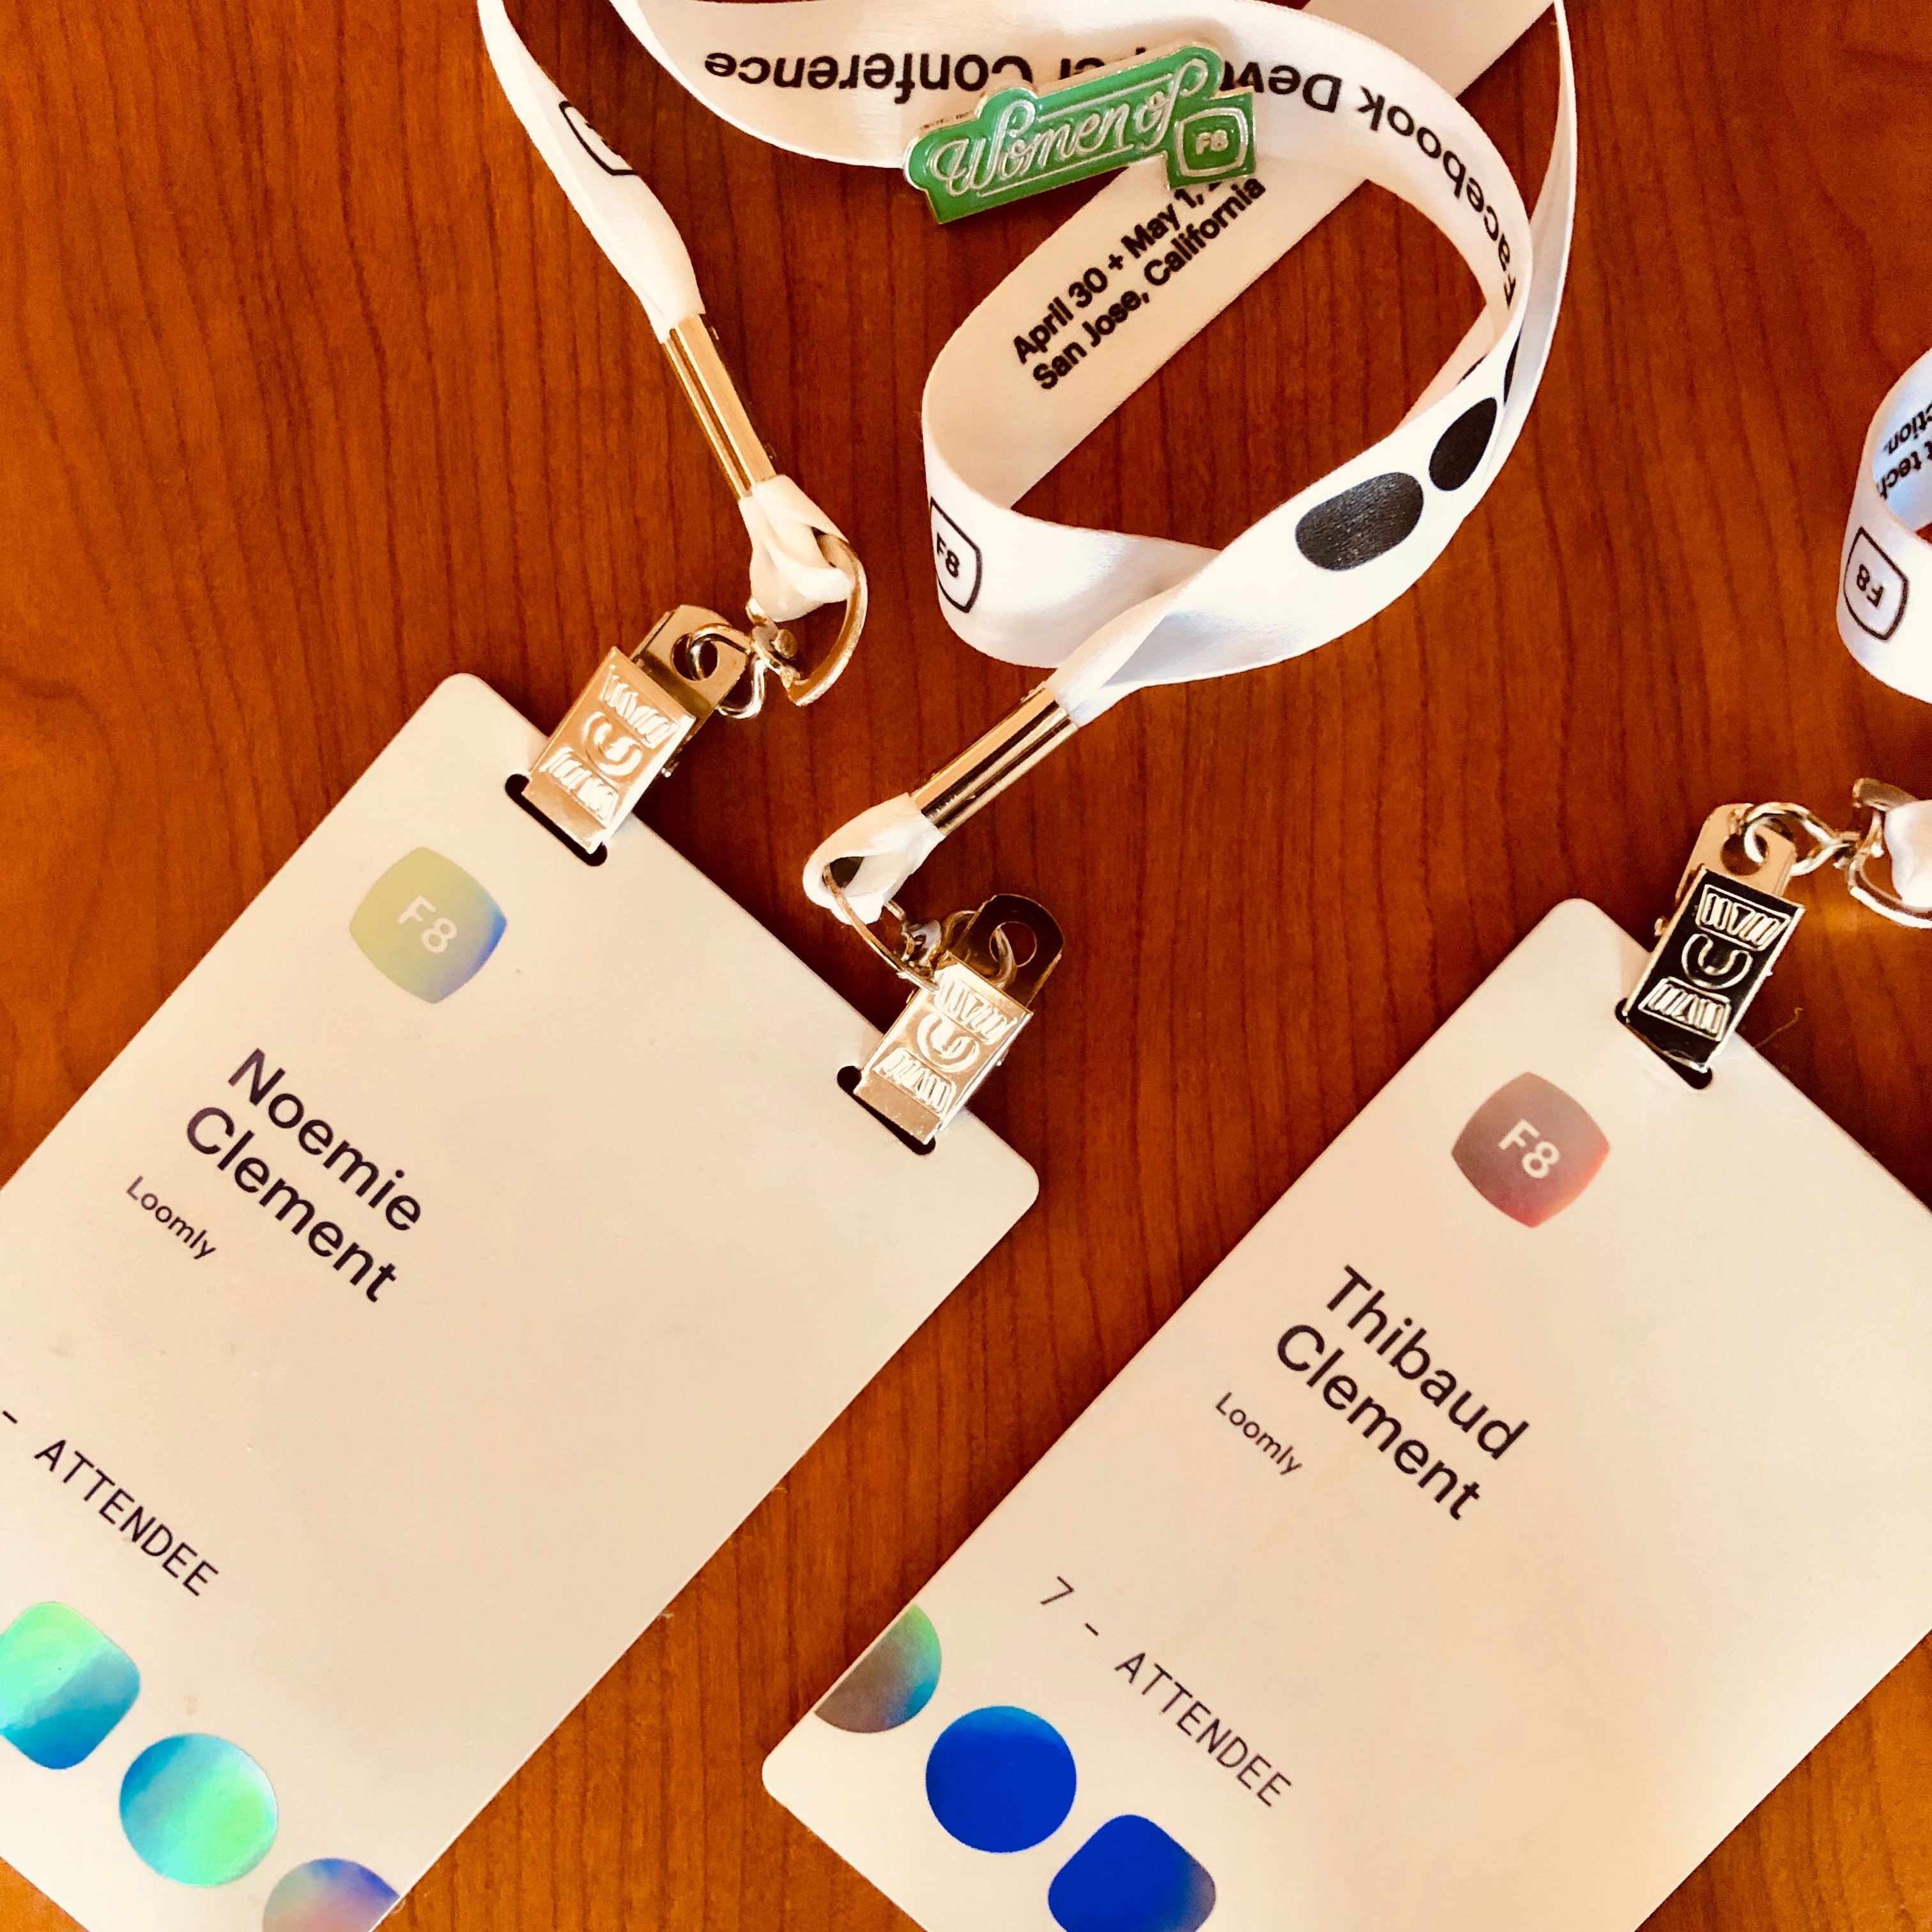 F8 2019 Loomly team attendee badges